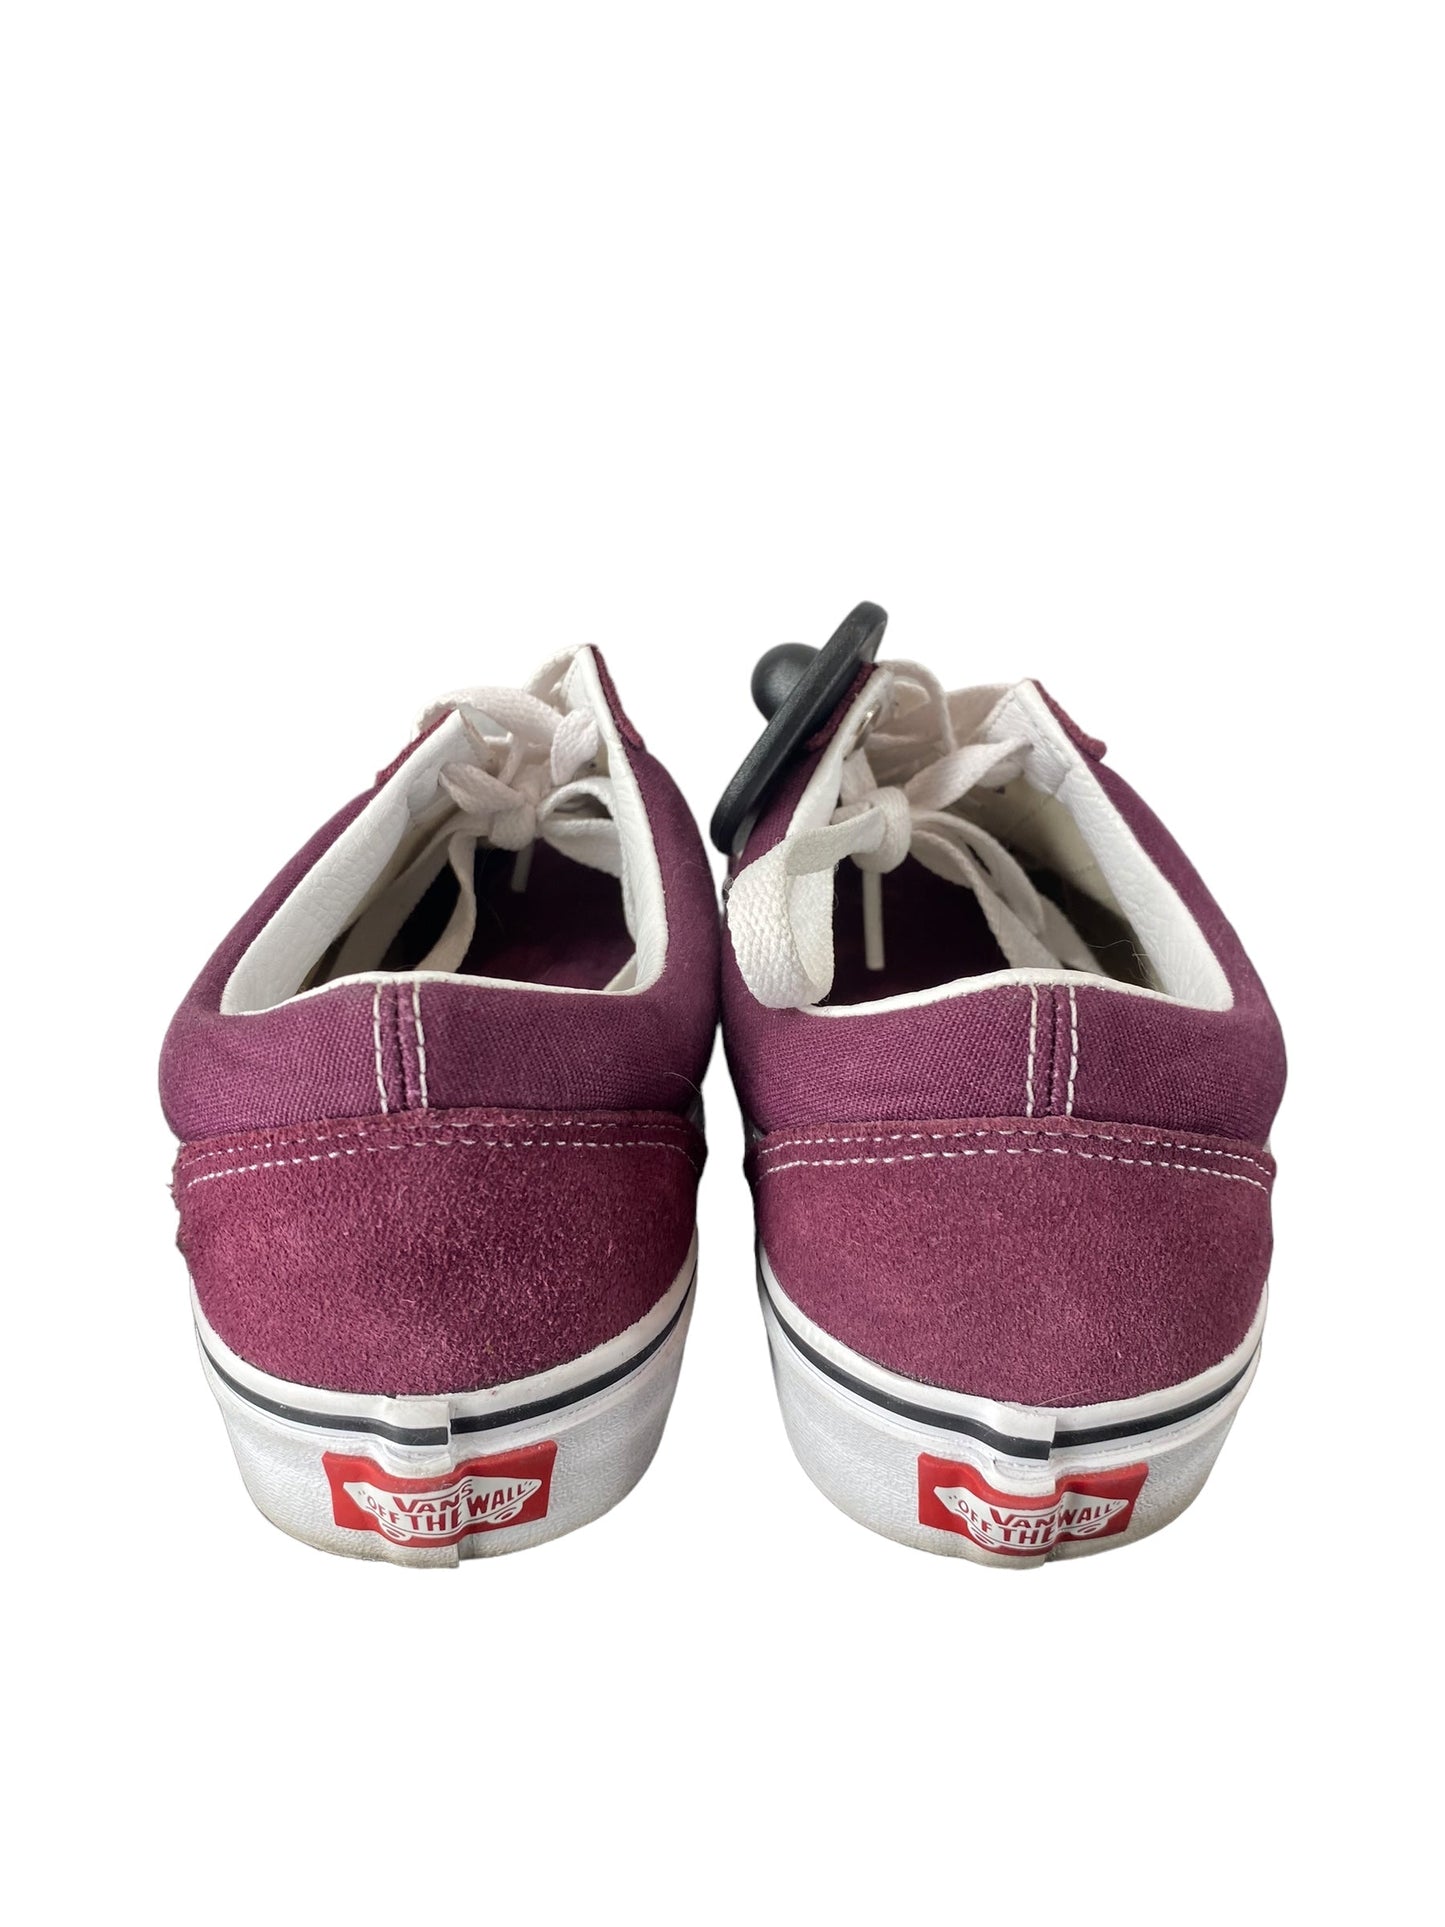 Purple Shoes Sneakers Vans, Size 8.5